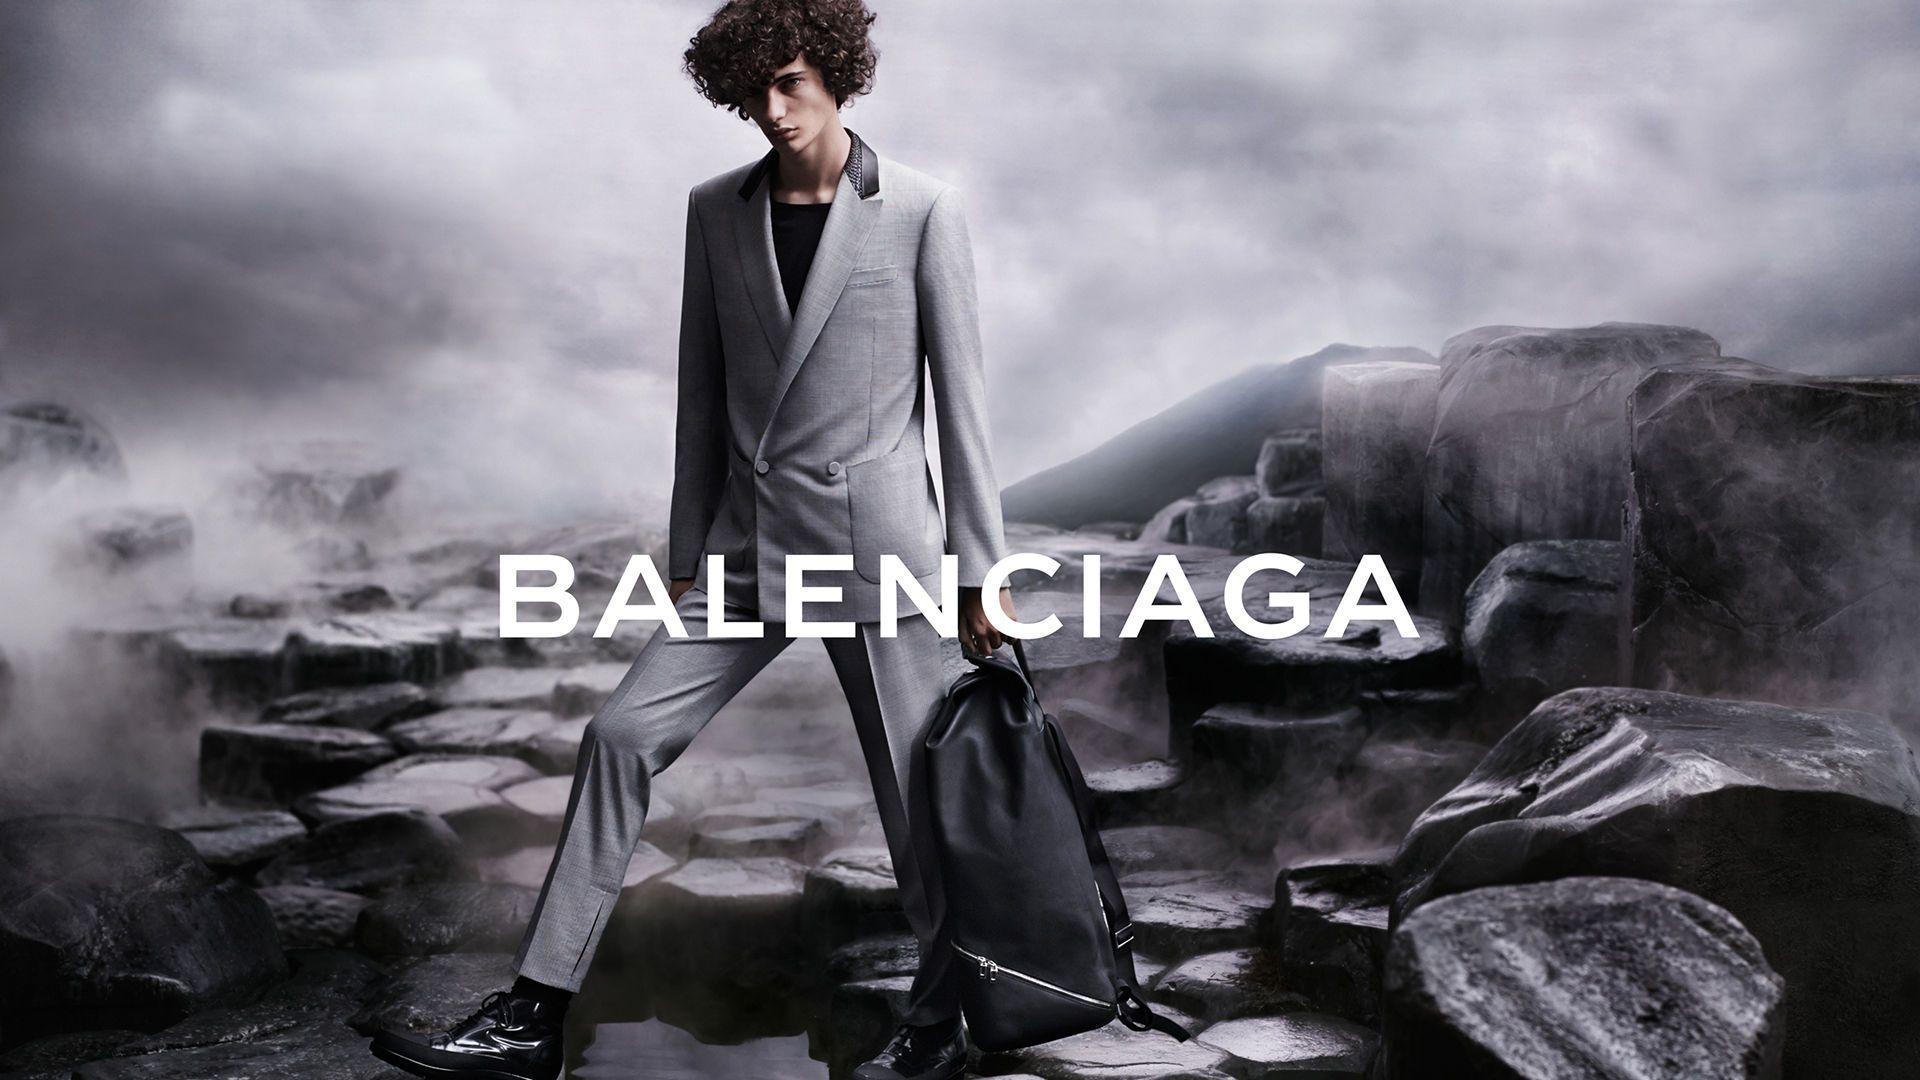 Balenciaga Wallpapers - Top Free Balenciaga Backgrounds - WallpaperAccess